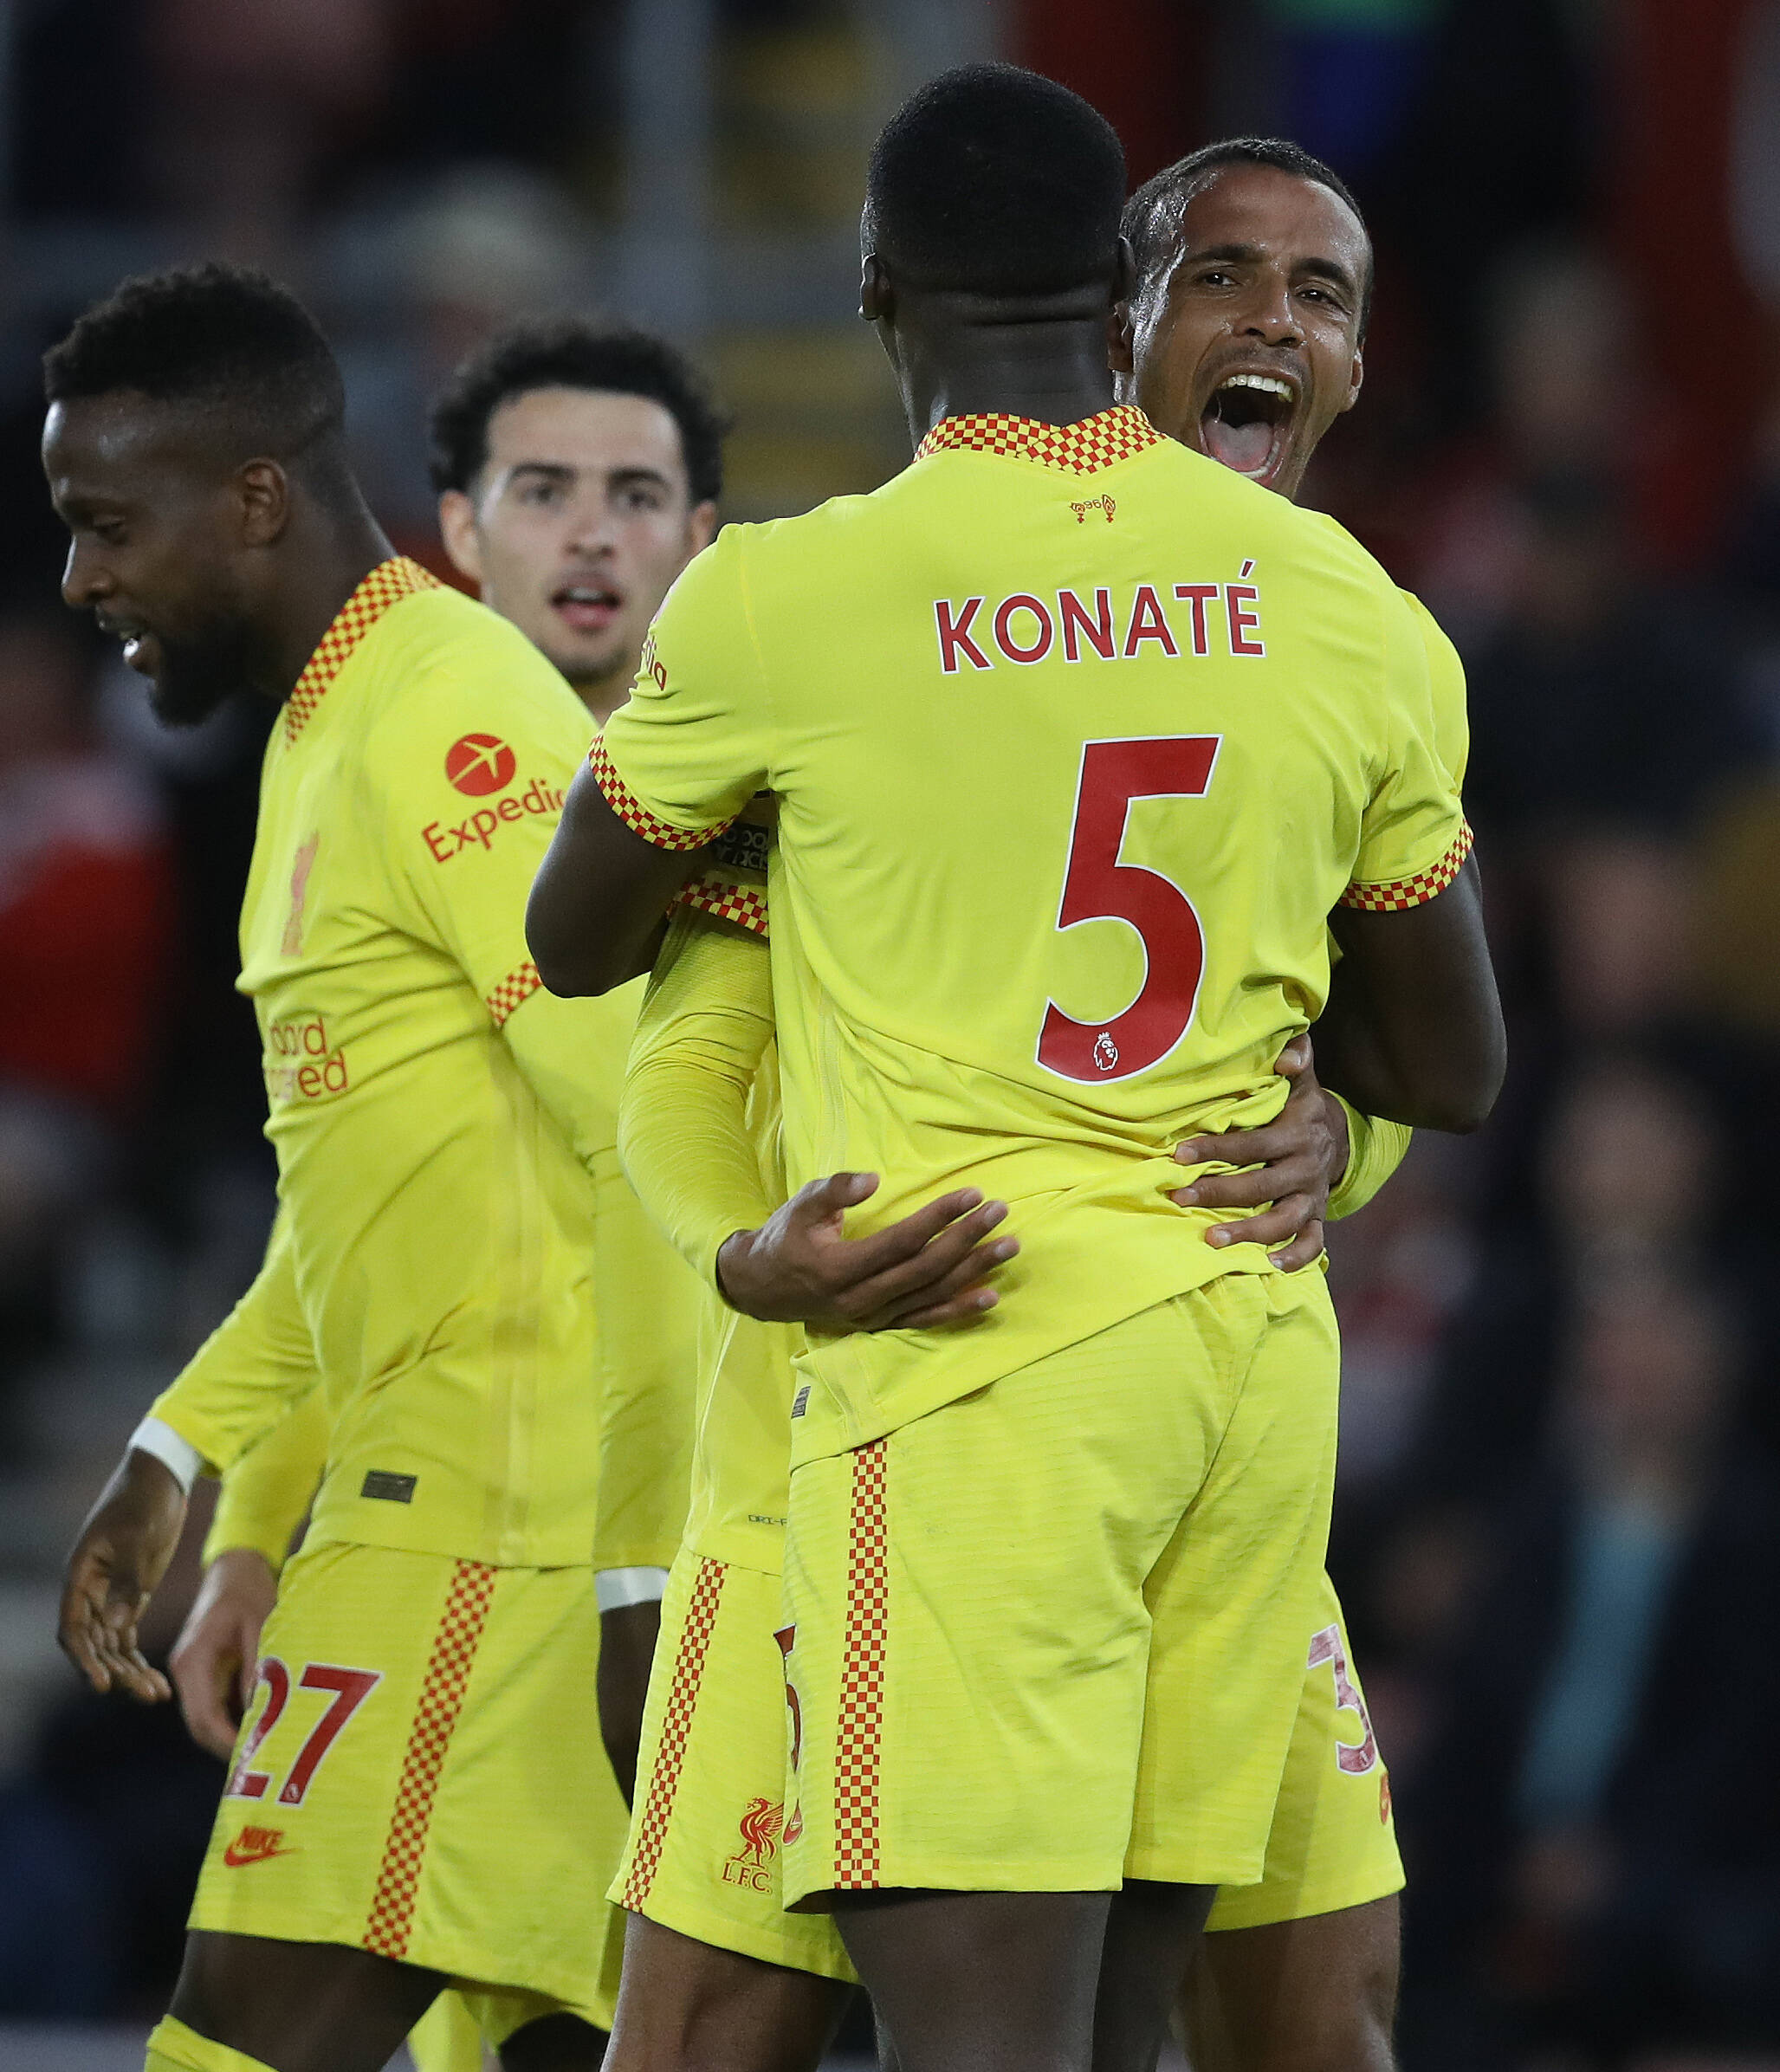 Liverpool defenders Joel Matip and Ibrahima Konate